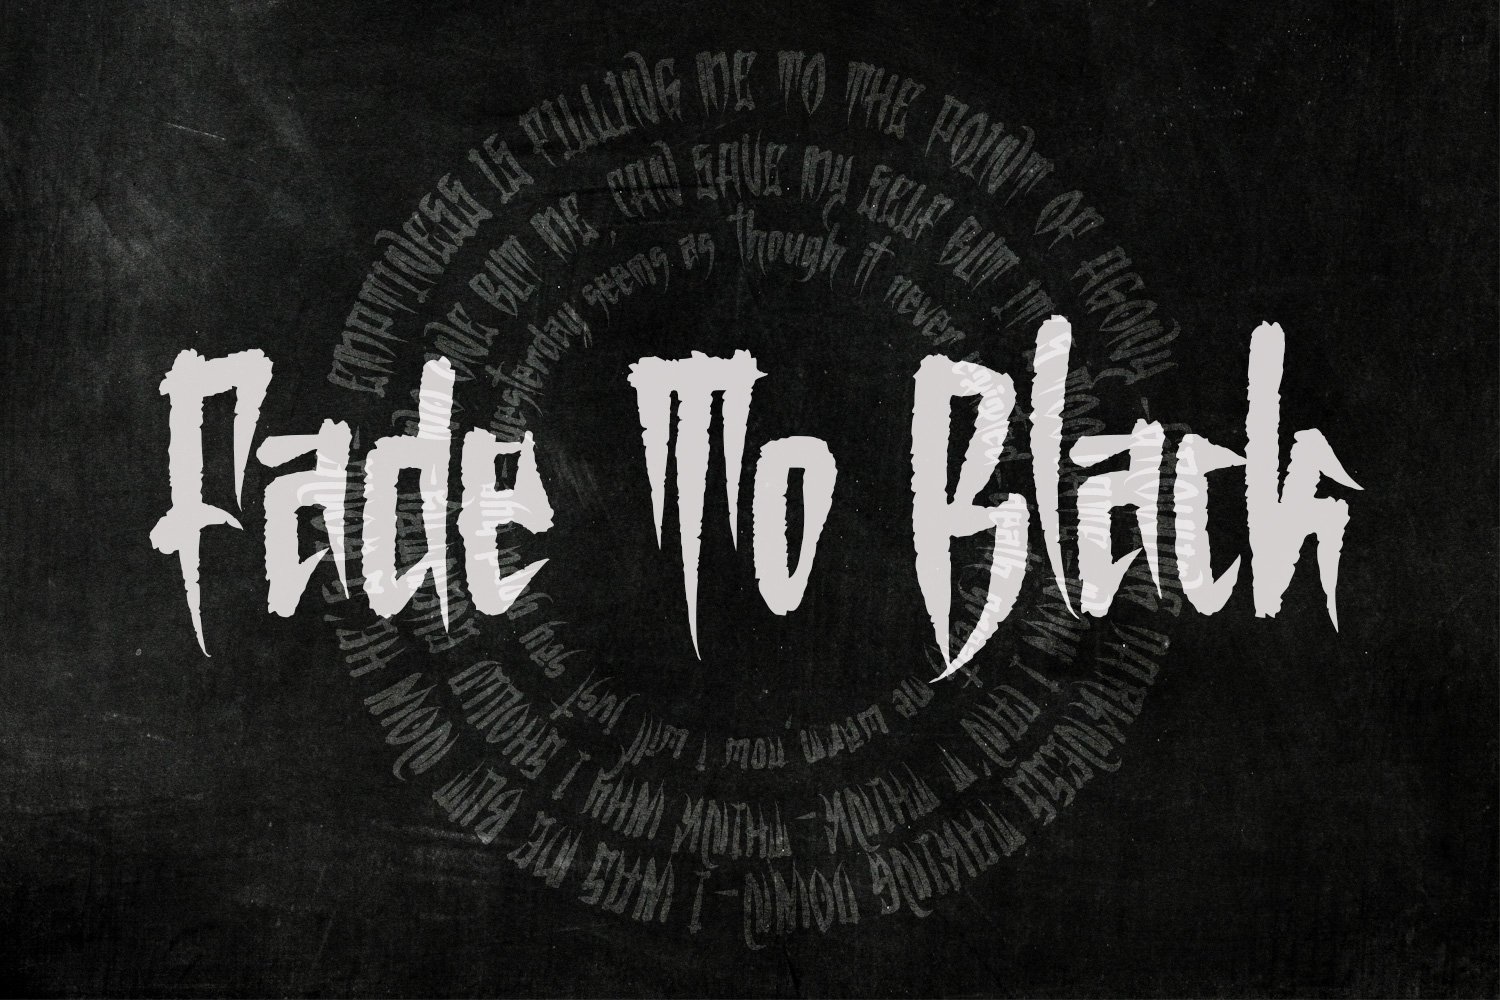 Black Orchestra - Blackletter font preview image.